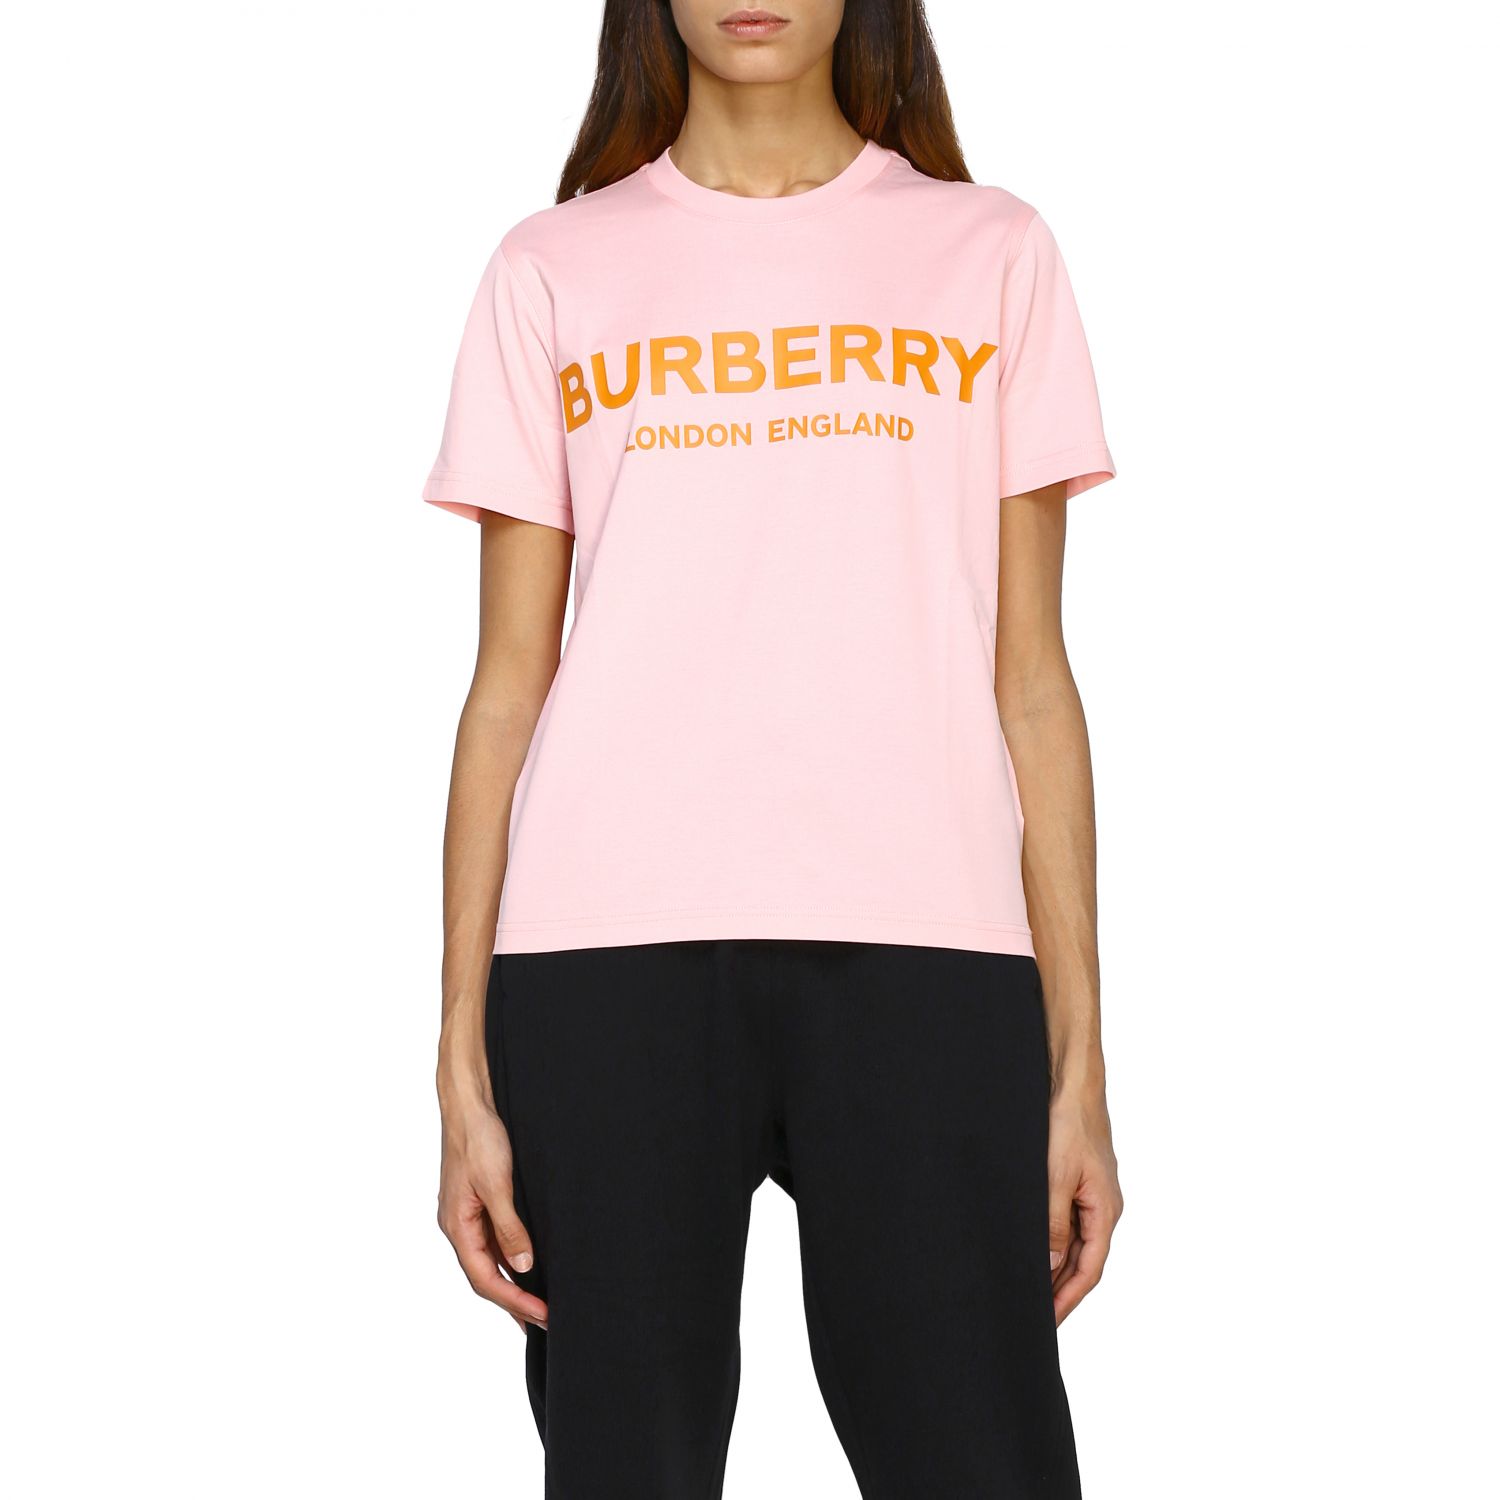 burberry t shirt womens orange